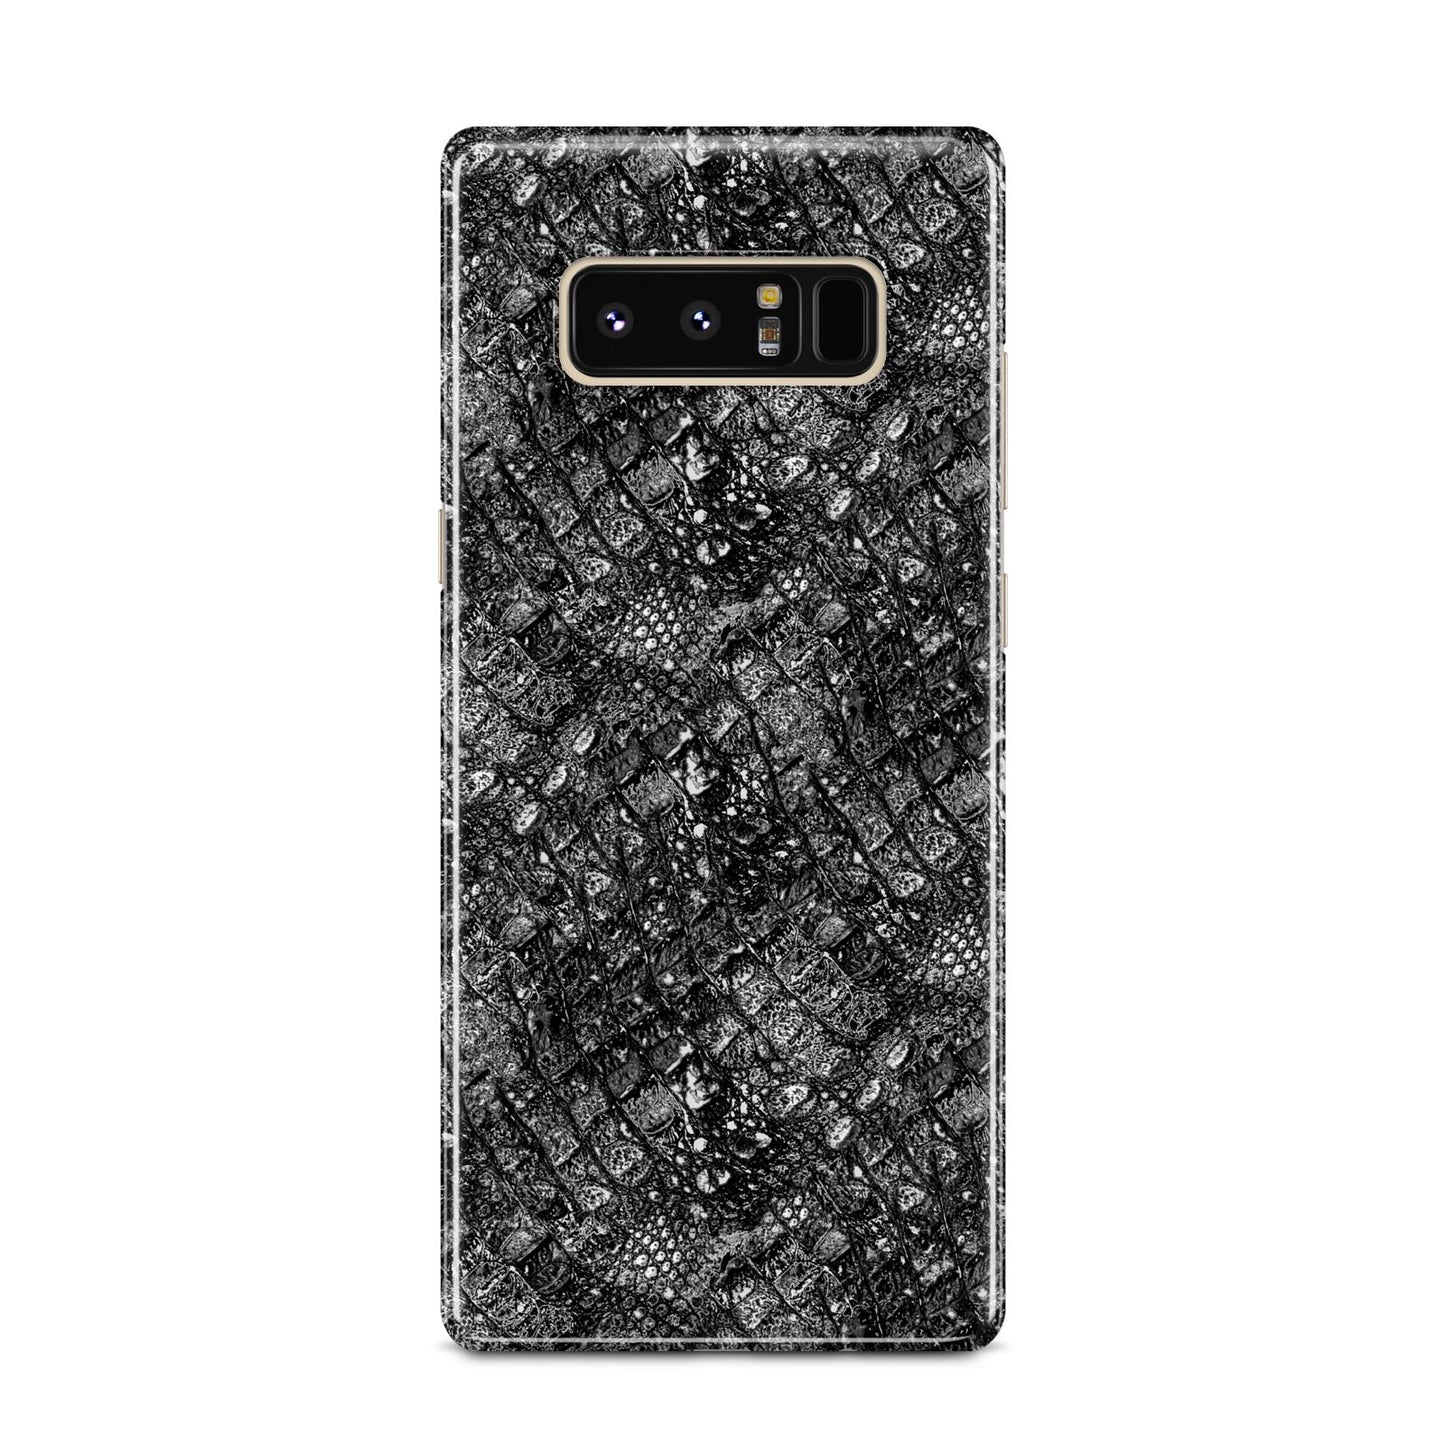 Snakeskin Design Samsung Galaxy Note 8 Case